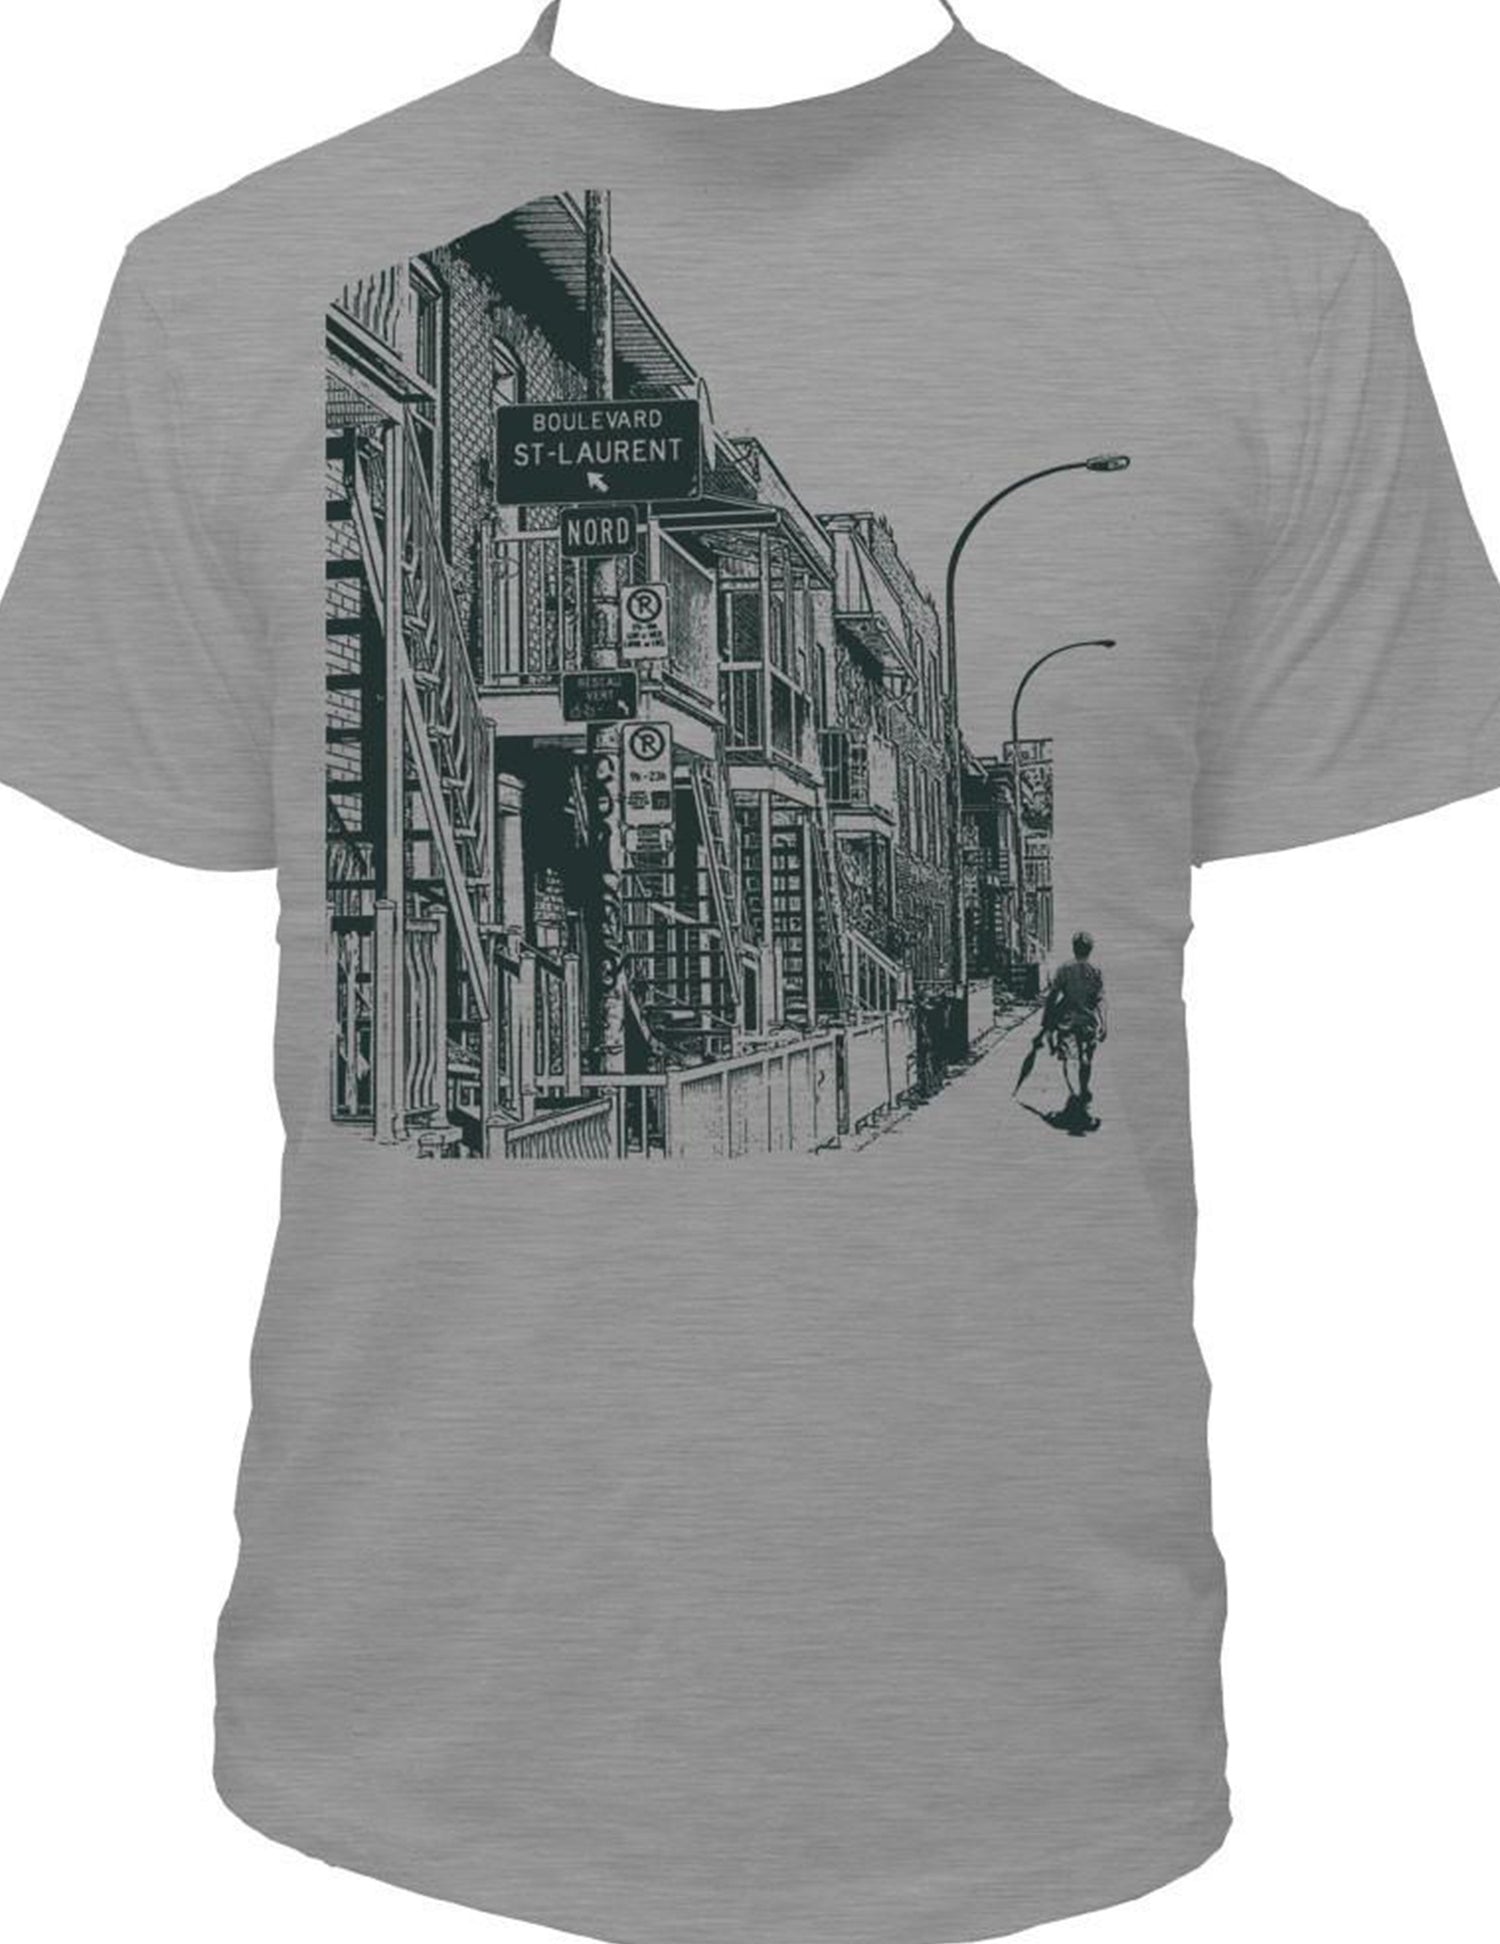 Propagez votre urbanité avec ce t-shirt ! Gris boulevard Saint-Laurent. Vendu chez Tah-dah !